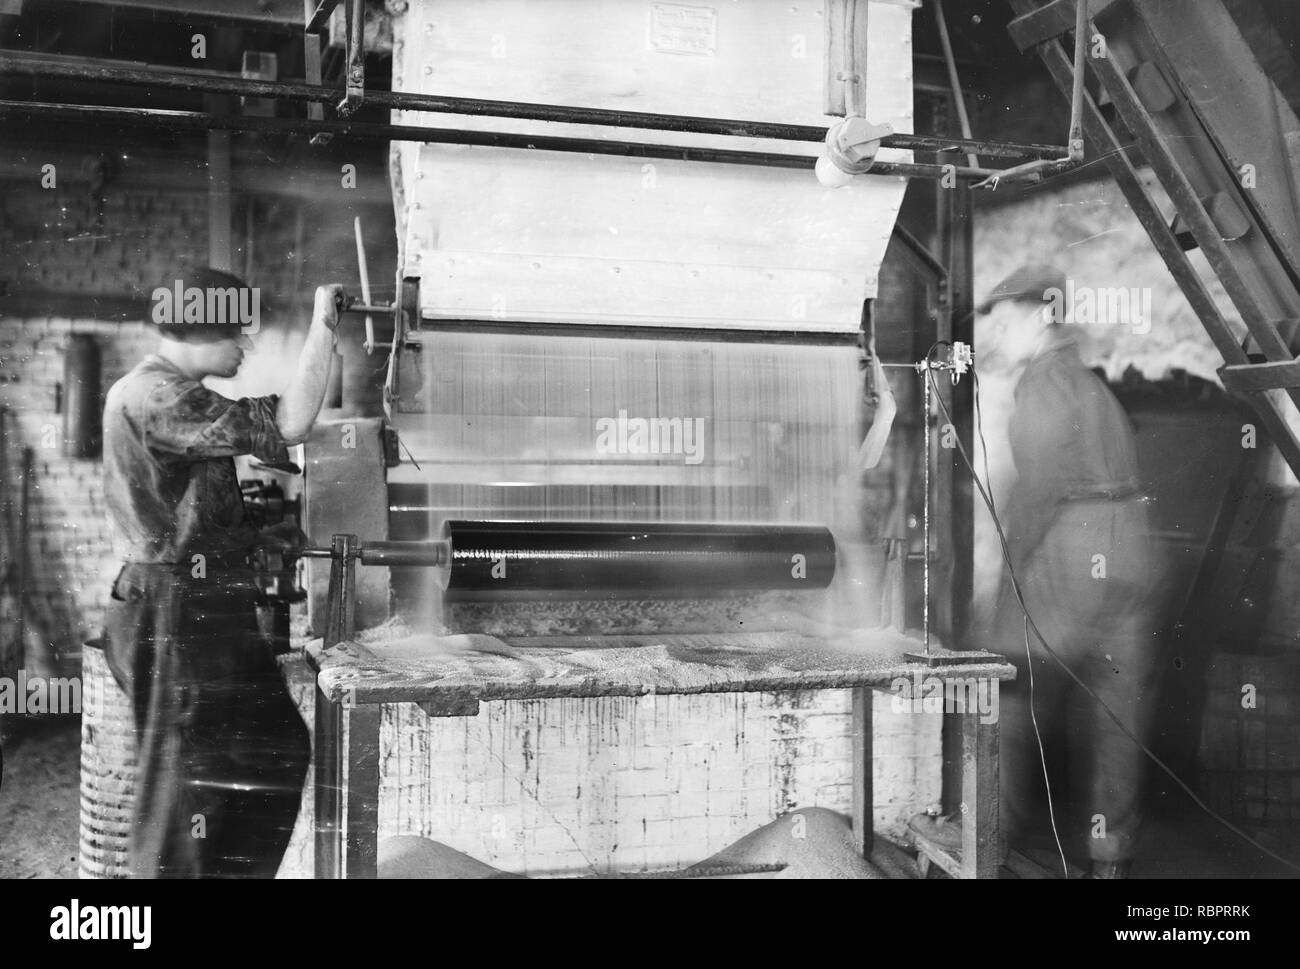 10x15 Opname van de fabricage van asfaltpapier bij de NV Biteer te Huizen, Bestanddeelnr 256-0543. Stock Photo